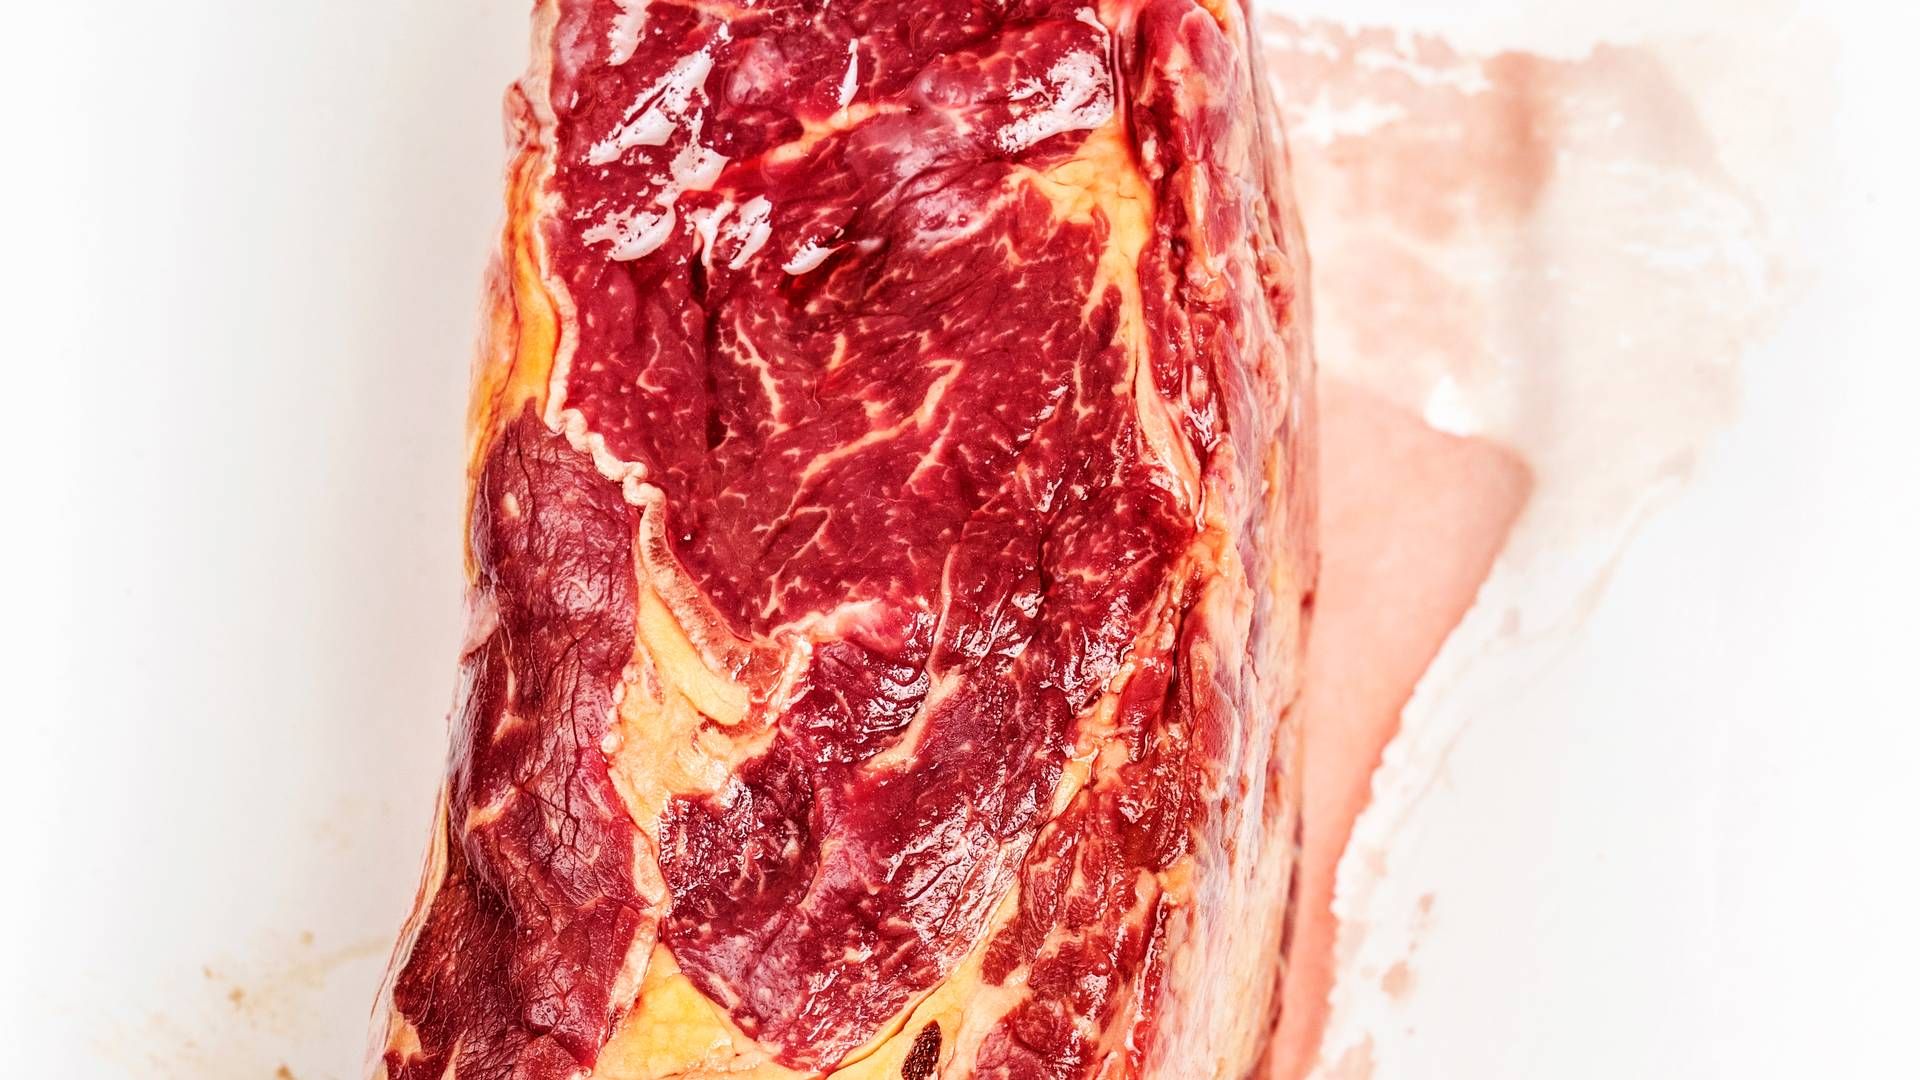 USDA vil nu undersøge, om tilberedning af kød dræber virussen. | Foto: Miriam Dalsgaard